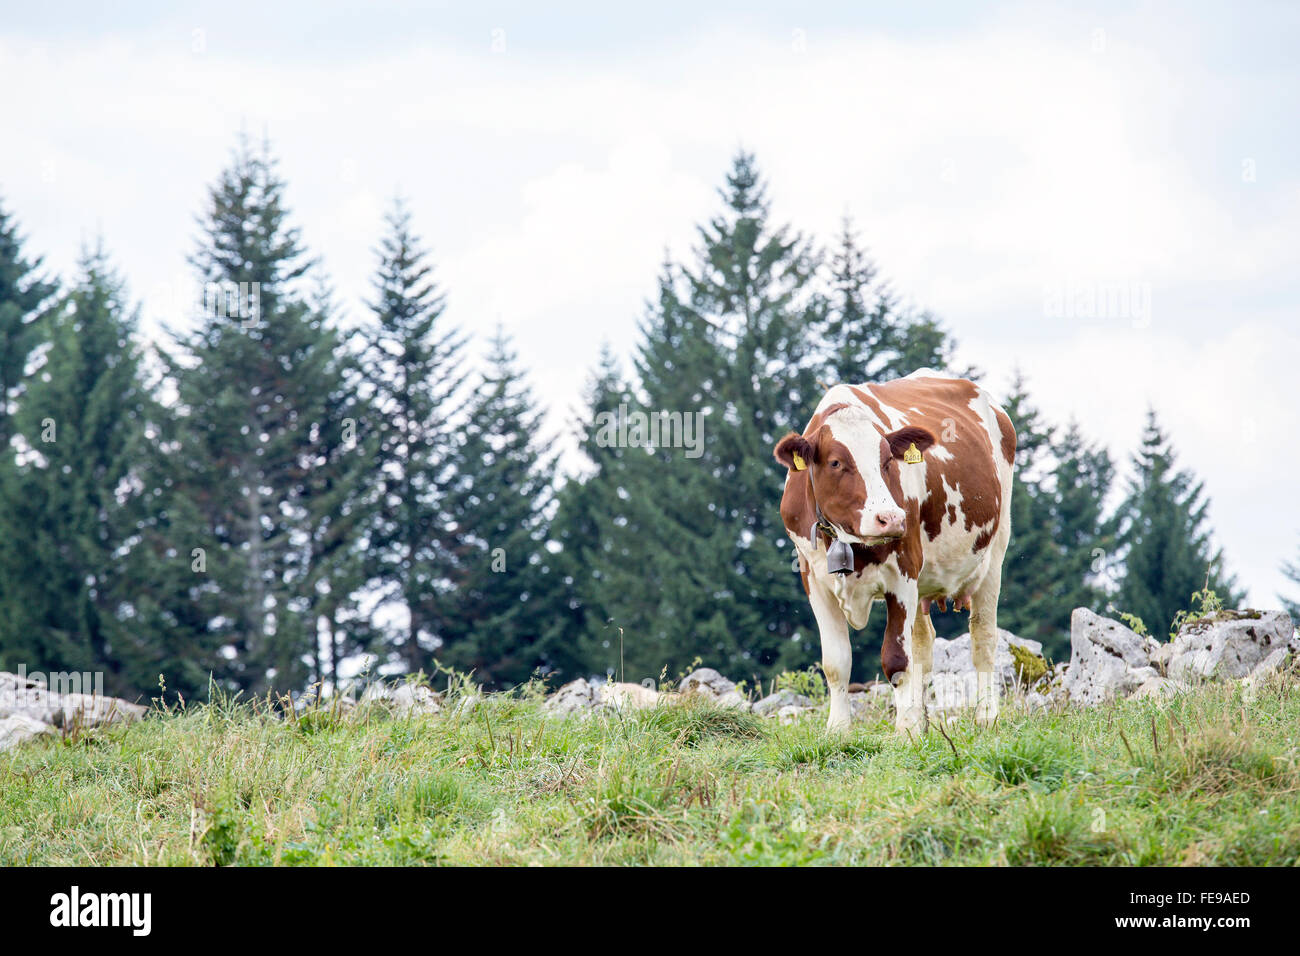 Une vache brune et blanche sur un pâturage pâturage avec des conifères sur l'arrière-plan Banque D'Images